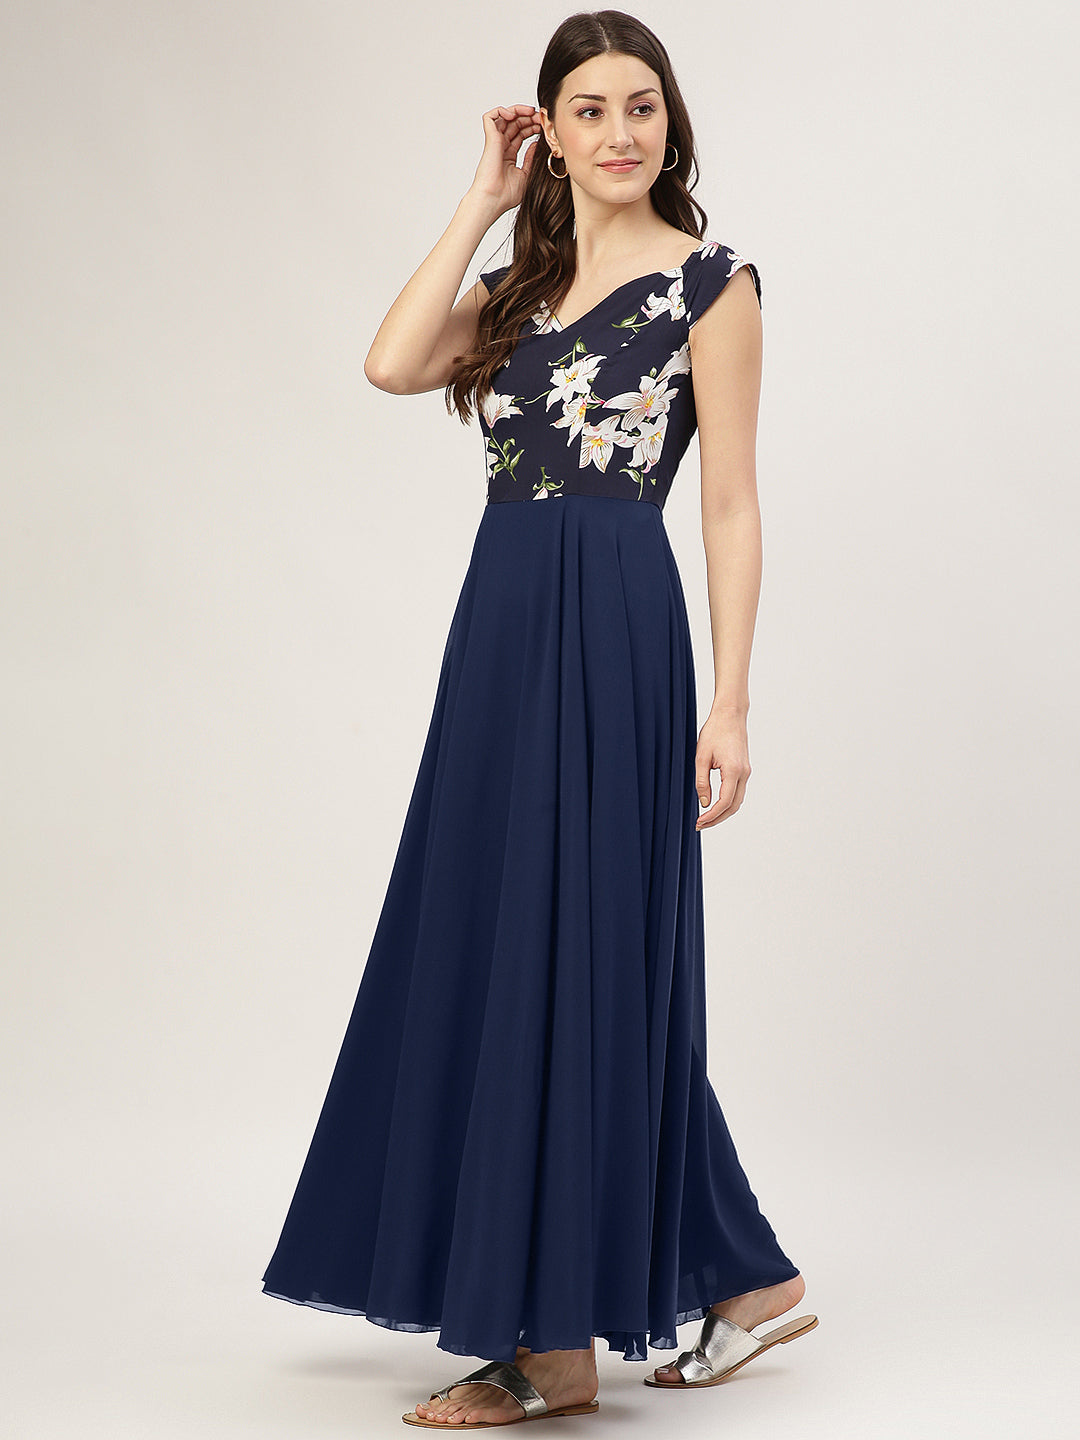 JVN23699 Light Blue 3D Floral A Line Prom Dress Plunging Neckline – Glass  Slipper Formals